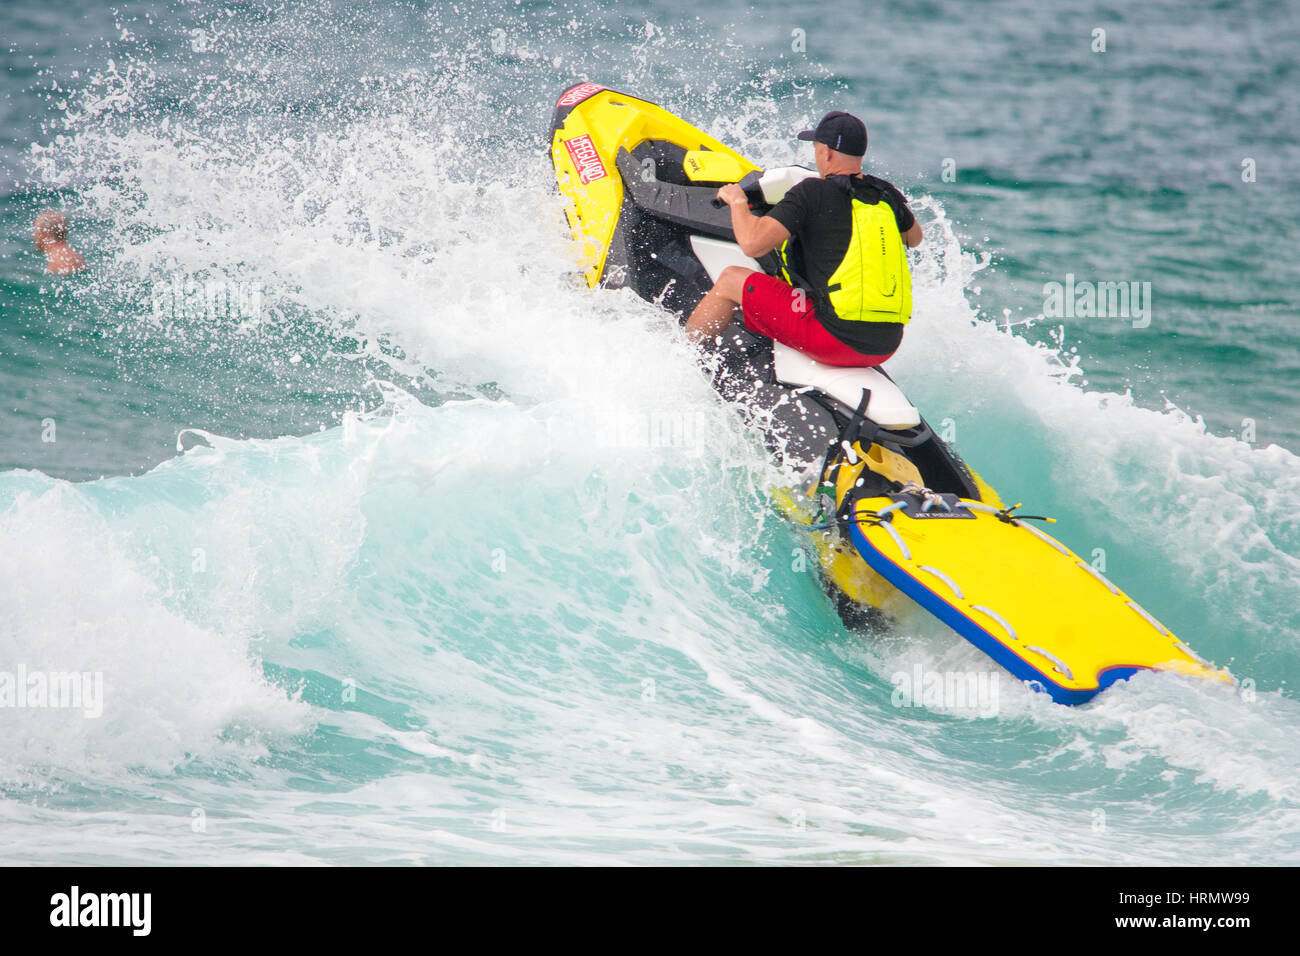 Sydney, Australia - 3 Marzo 2017: Australian Open di surf evento sportivo a Manly Beach, Australia con il surf, la BMX, pattinaggio e musica. Nella foto è un Surf Lifegurad patroling Manly Beach come frammentaria della pioggia avviene. Credito: mjmediabox / Alamy Live News Foto Stock